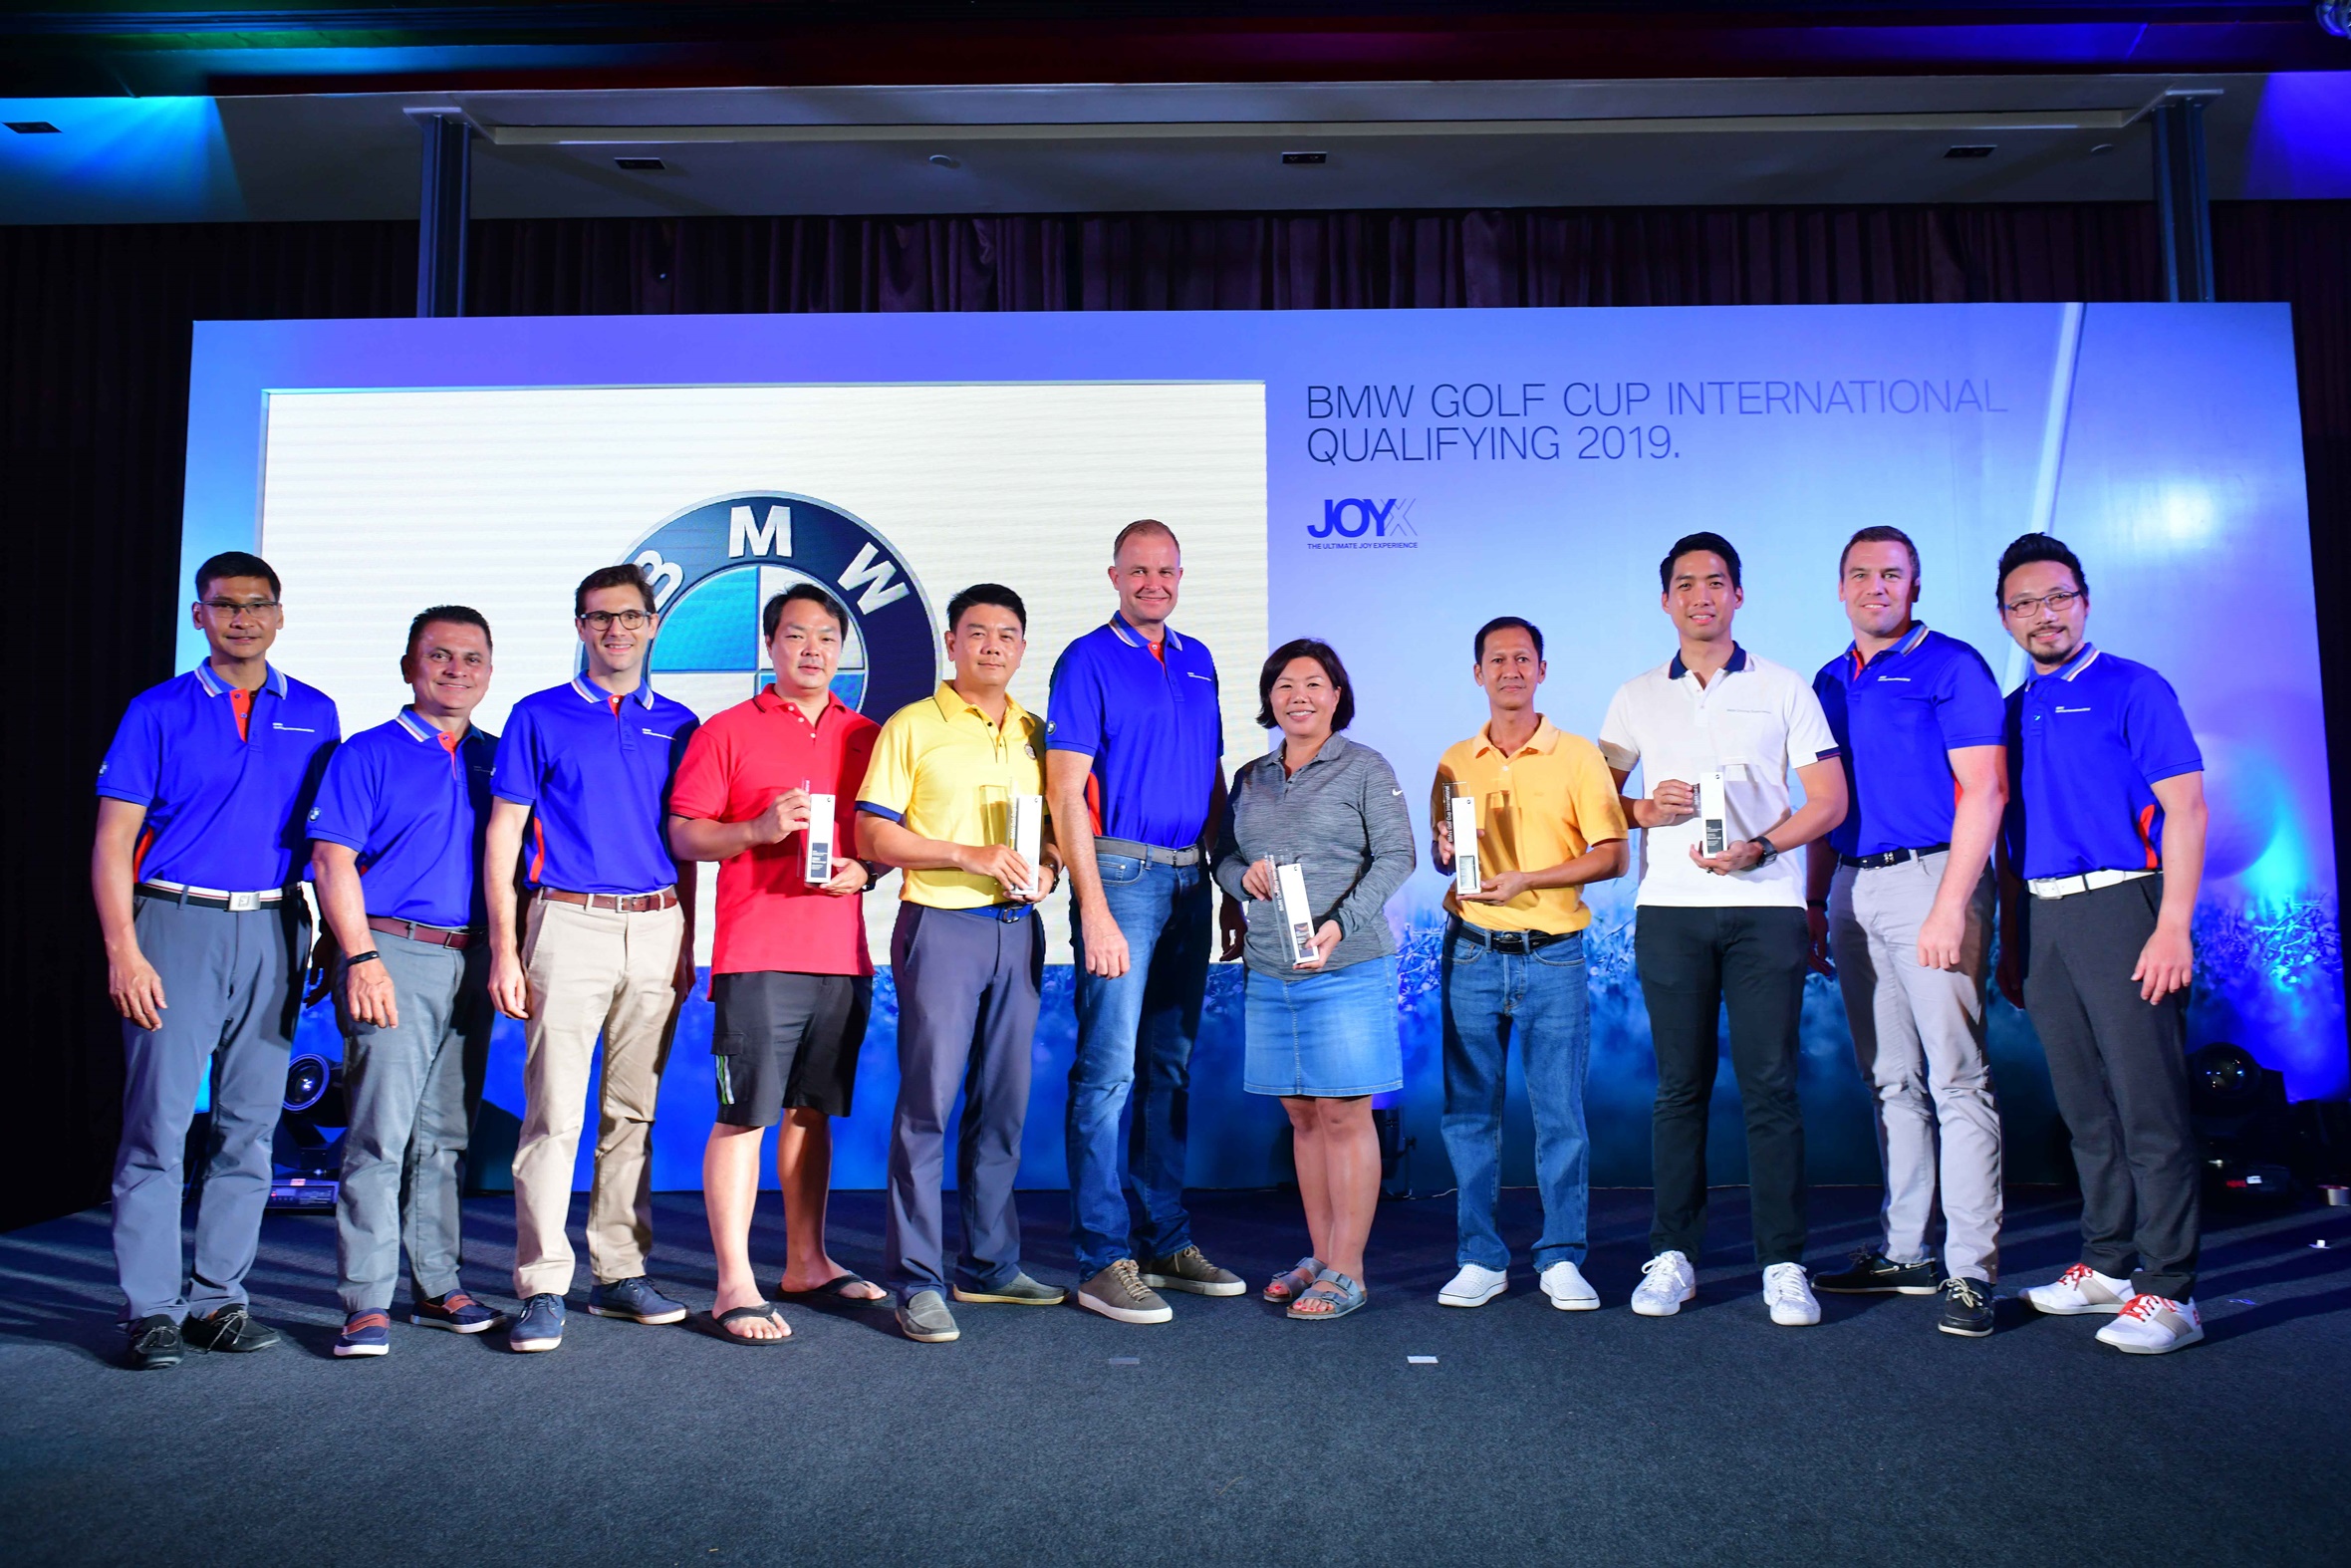 บีเอ็มดับเบิลยู ประเทศไทย เปิดทัวร์นาเม้นท์ BMW Golf Cup International 2019 รอบคัดเลือก เฟ้นหาตัวแทนนักกอล์ฟสมัครเล่นเข้าชิงแชมป์ระดับประเทศ 